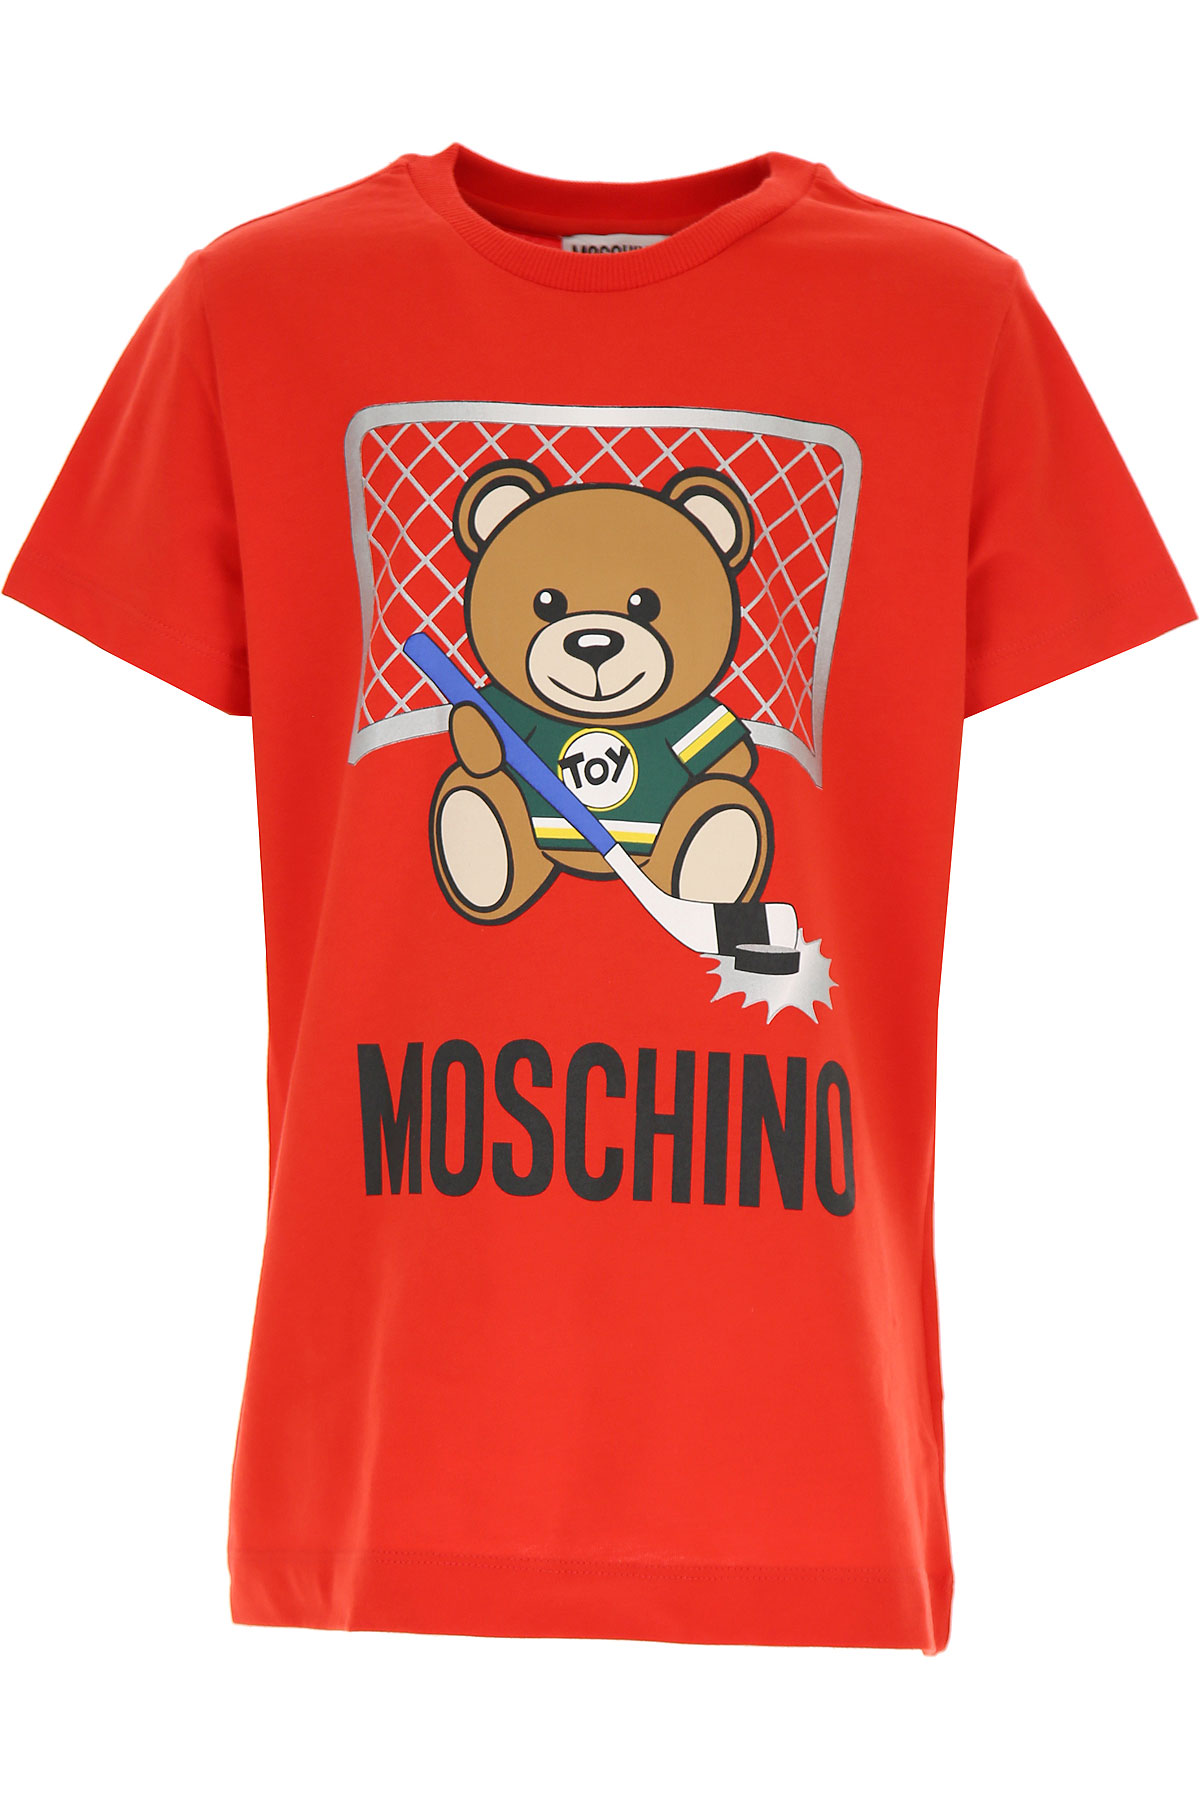 Moschino Kinder T-Shirt für Jungen Günstig im Sale, Rot, Baumwolle, 2017, 10Y 5Y 6Y 8Y